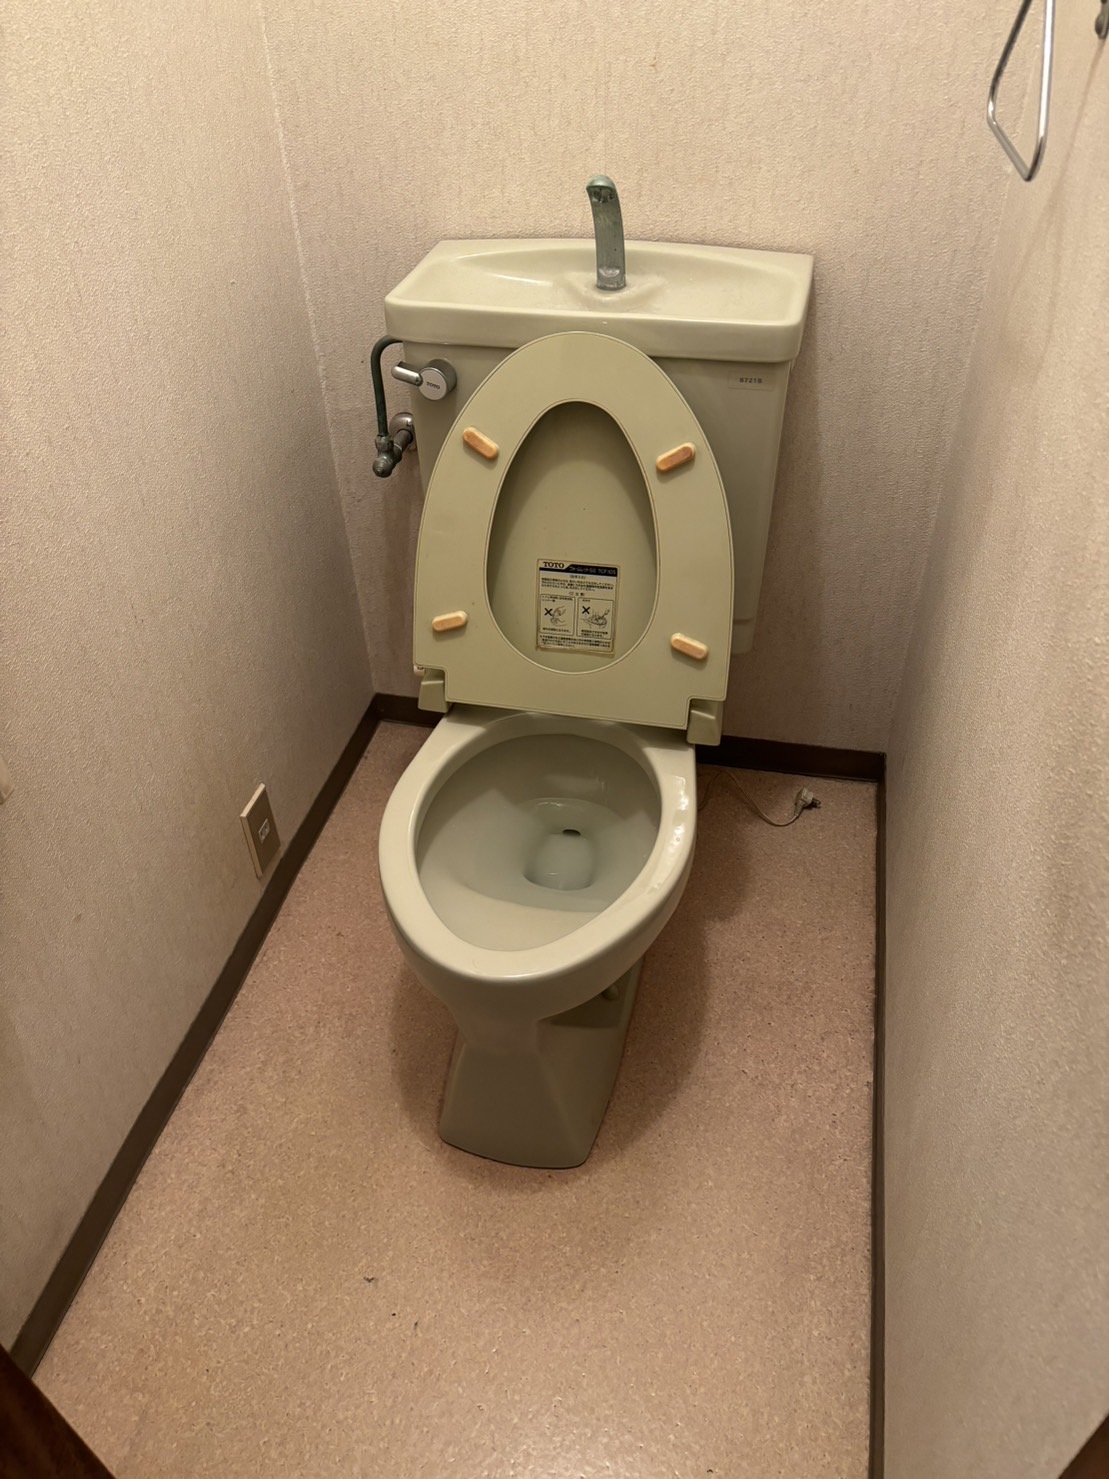 既存のトイレ